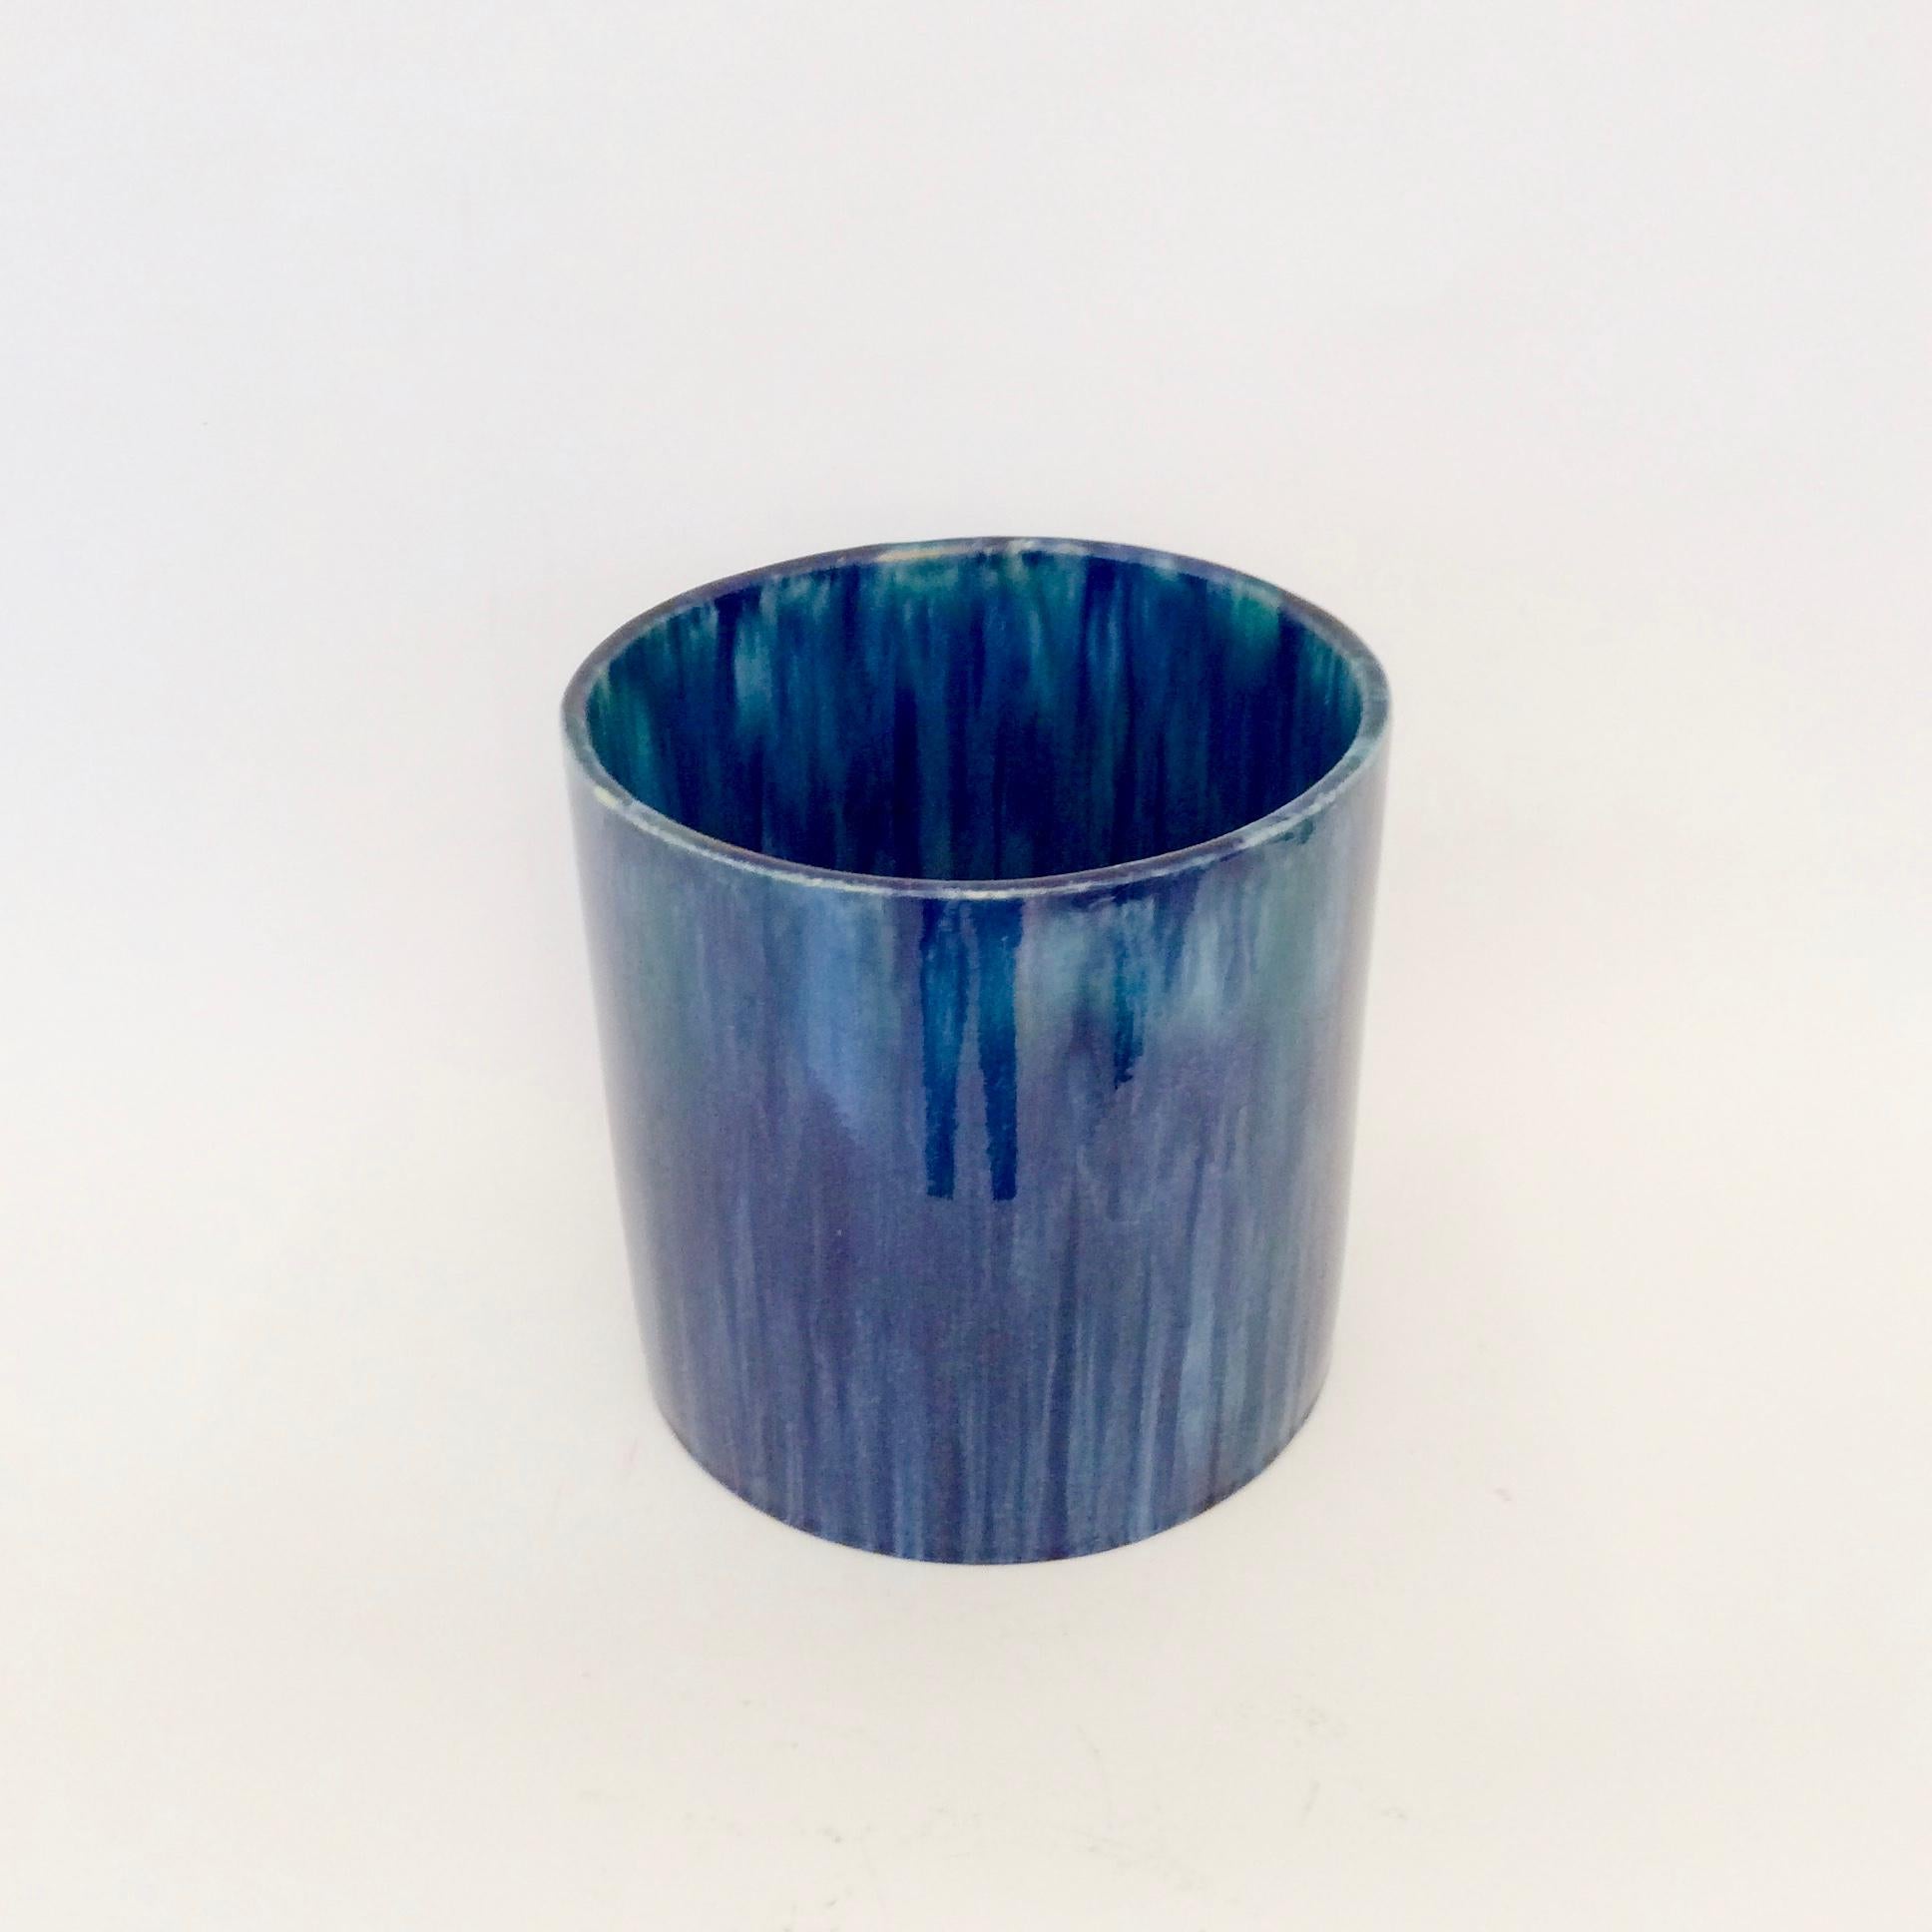 Serrurier-Bovy Blue Enameled Earthenware Cylinder Vase, 1905, Belgium For Sale 1